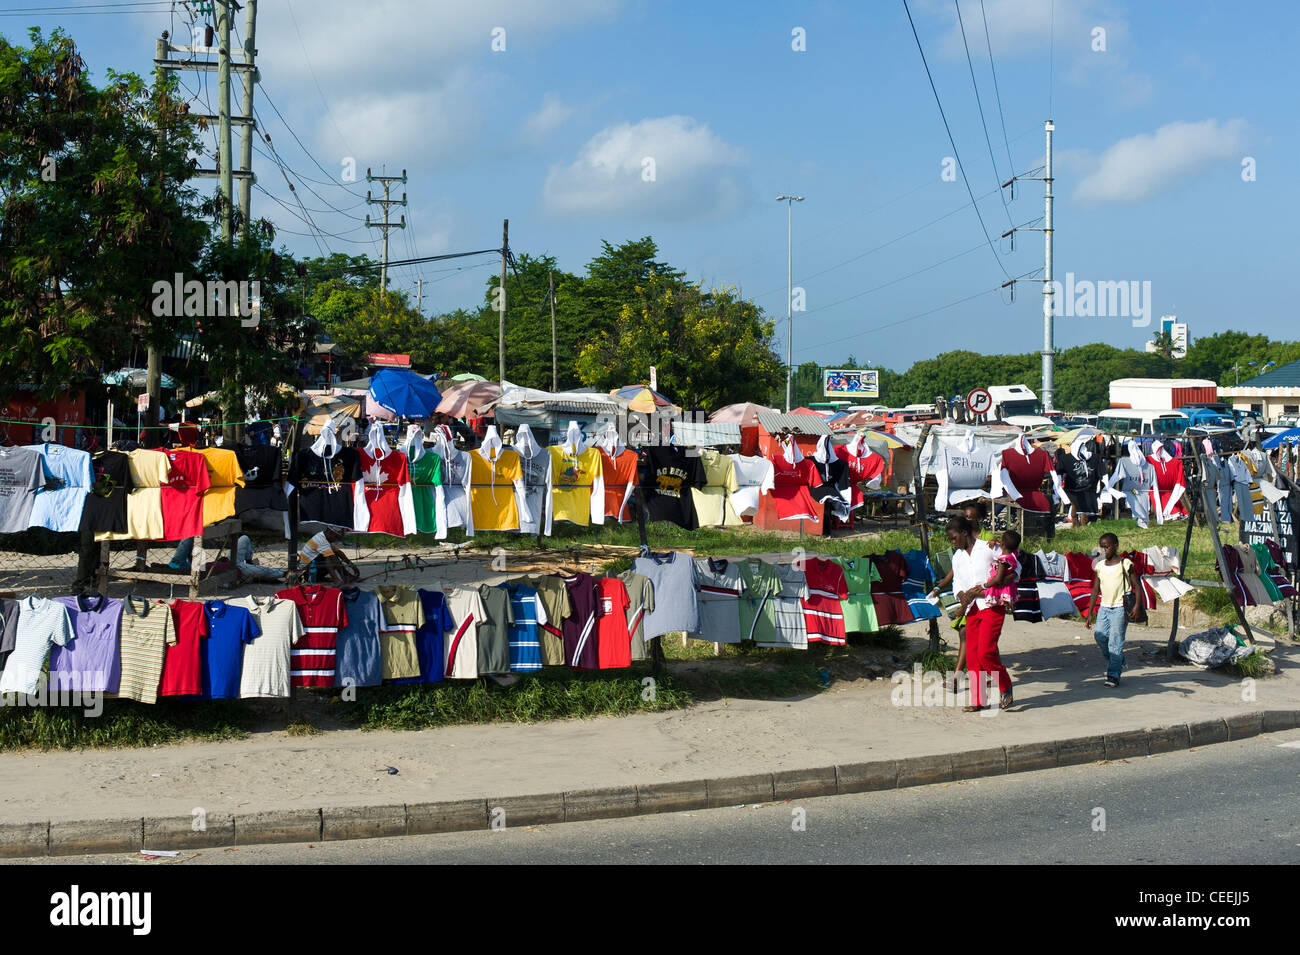 La vente à la sauvette clothers le long de la route à Dar es Salaam en Tanzanie Banque D'Images